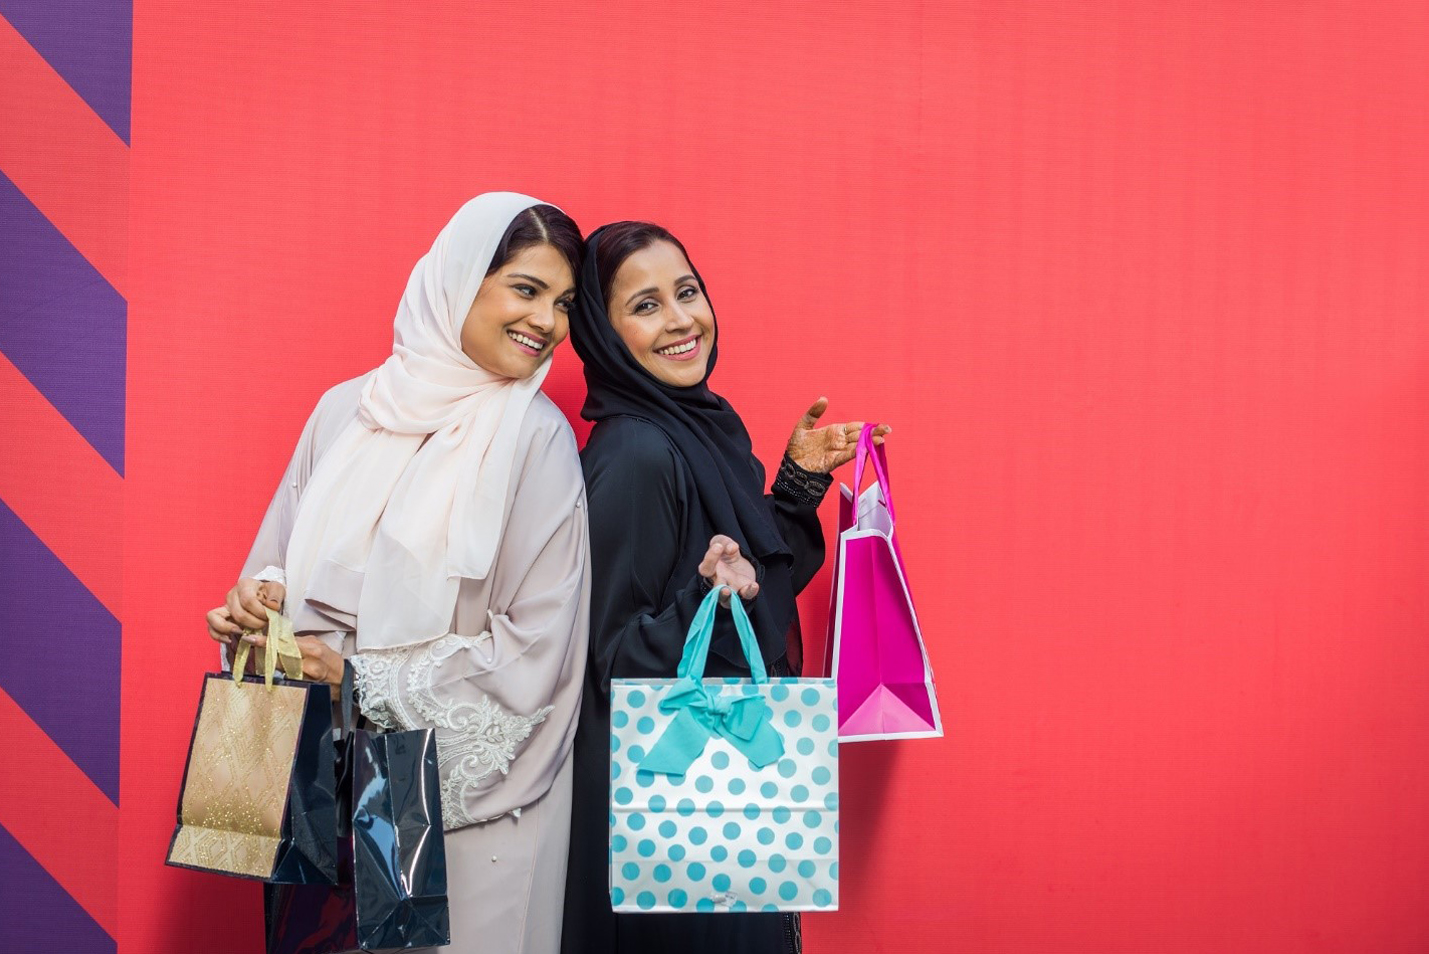 خرید لباس در ماه رمضان